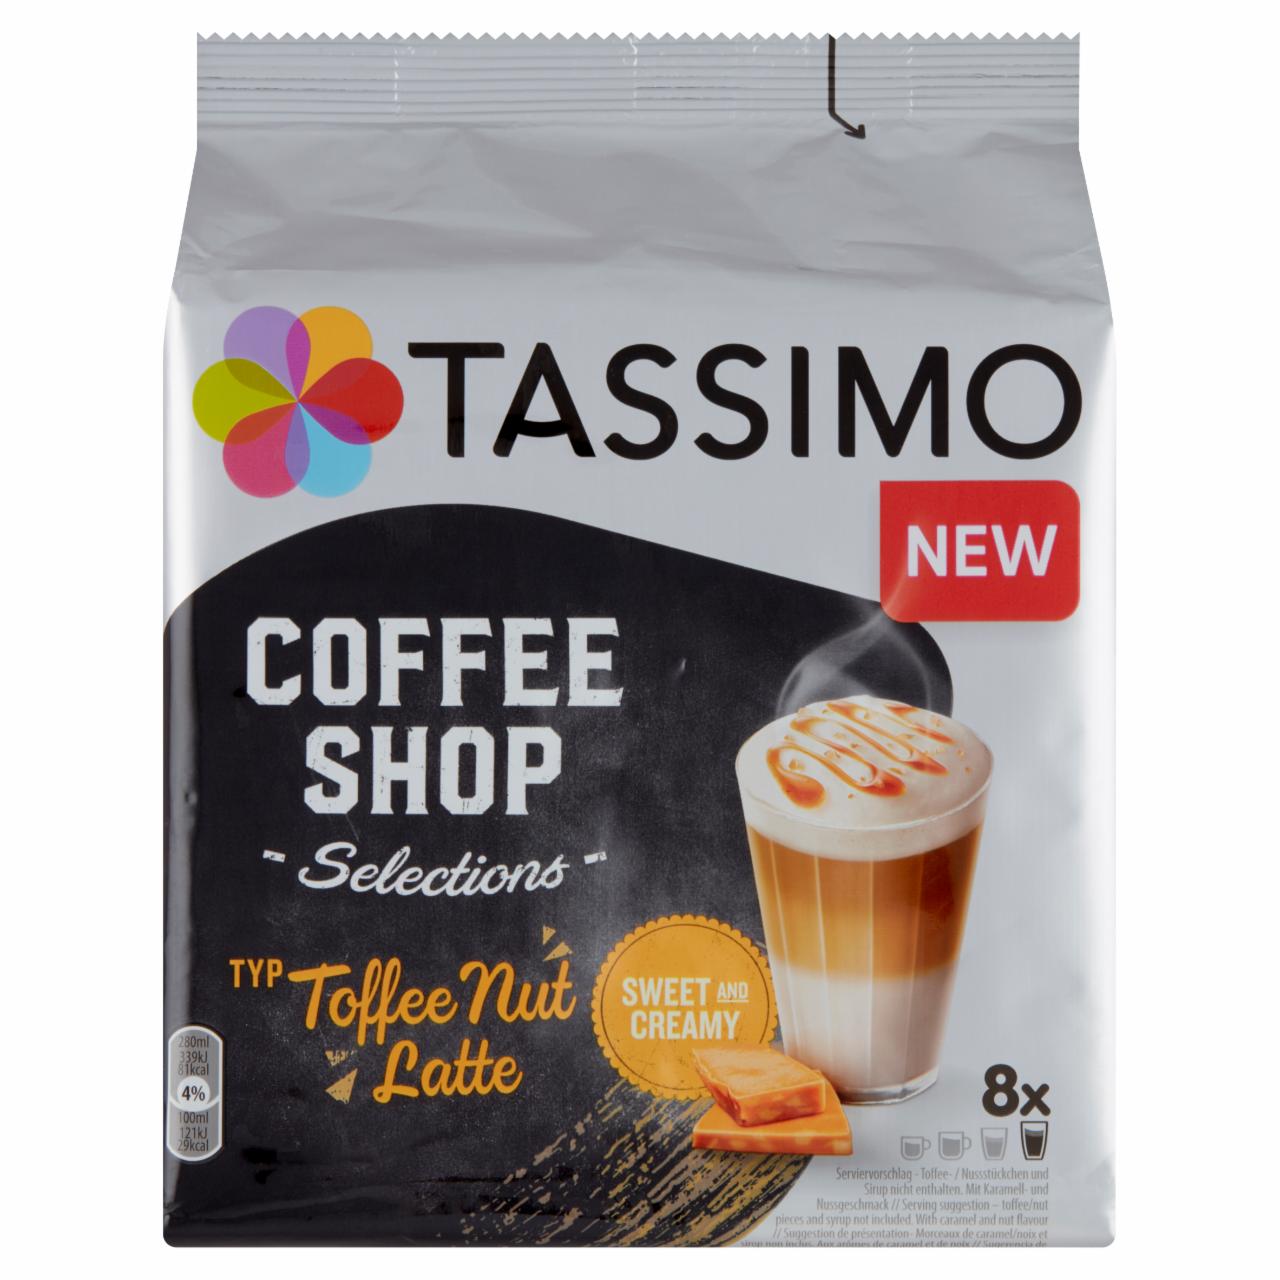 Zdjęcia - Tassimo Coffee Shop Selections Toffee Nut Latte Kawa mielona 8 sztuk i śmietanka 8 sztuk 268 g